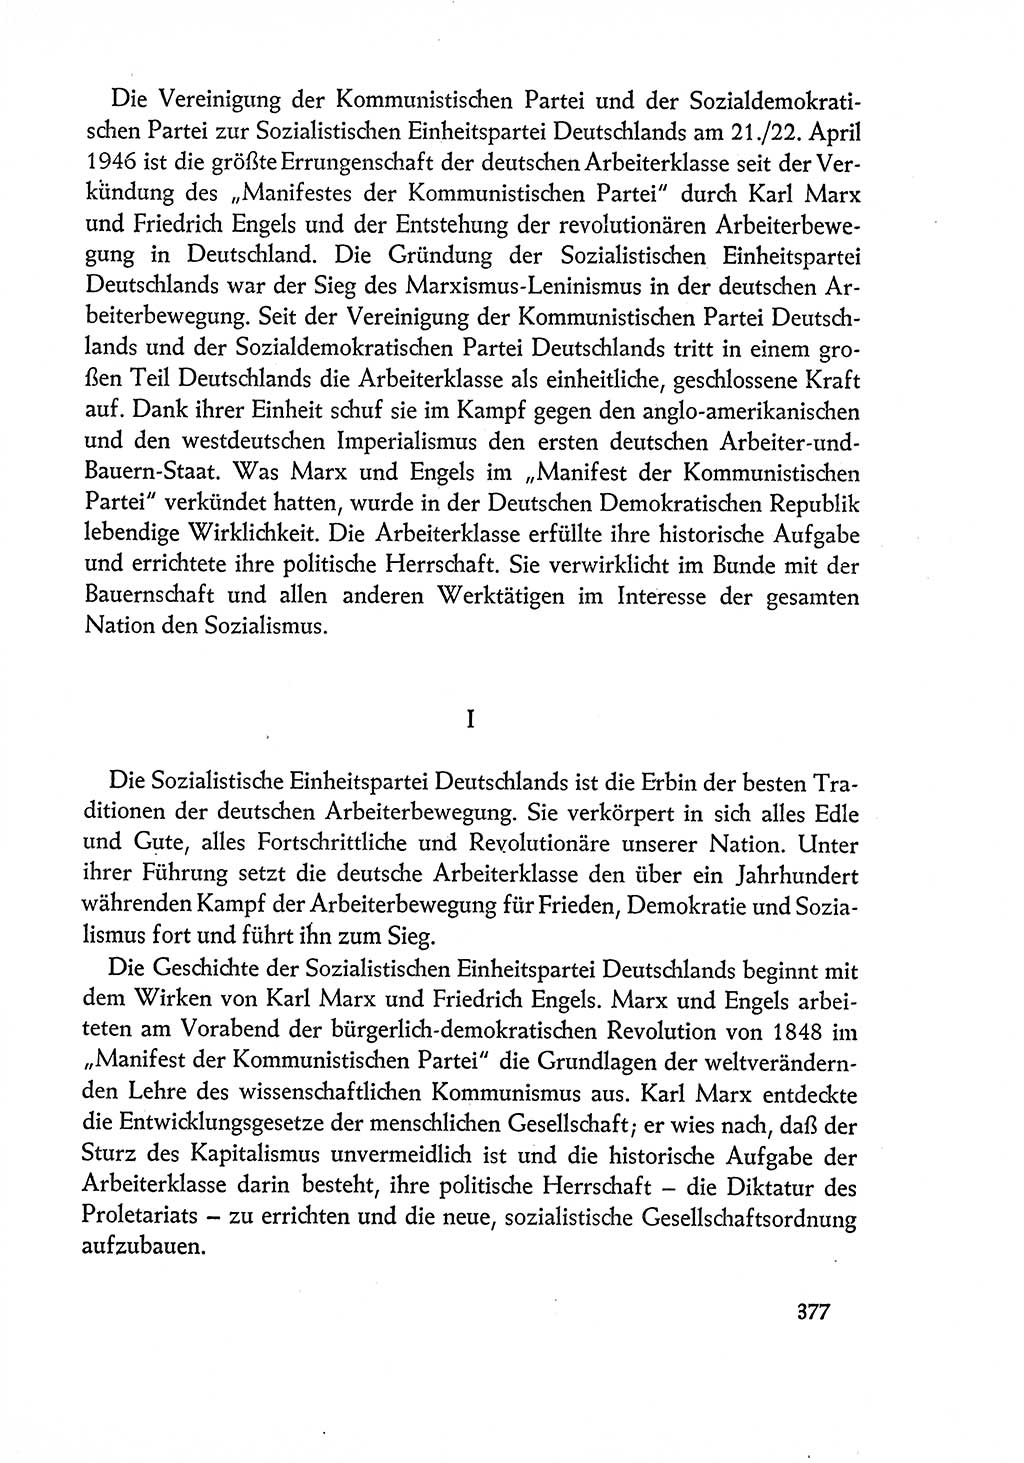 Dokumente der Sozialistischen Einheitspartei Deutschlands (SED) [Deutsche Demokratische Republik (DDR)] 1960-1961, Seite 377 (Dok. SED DDR 1960-1961, S. 377)